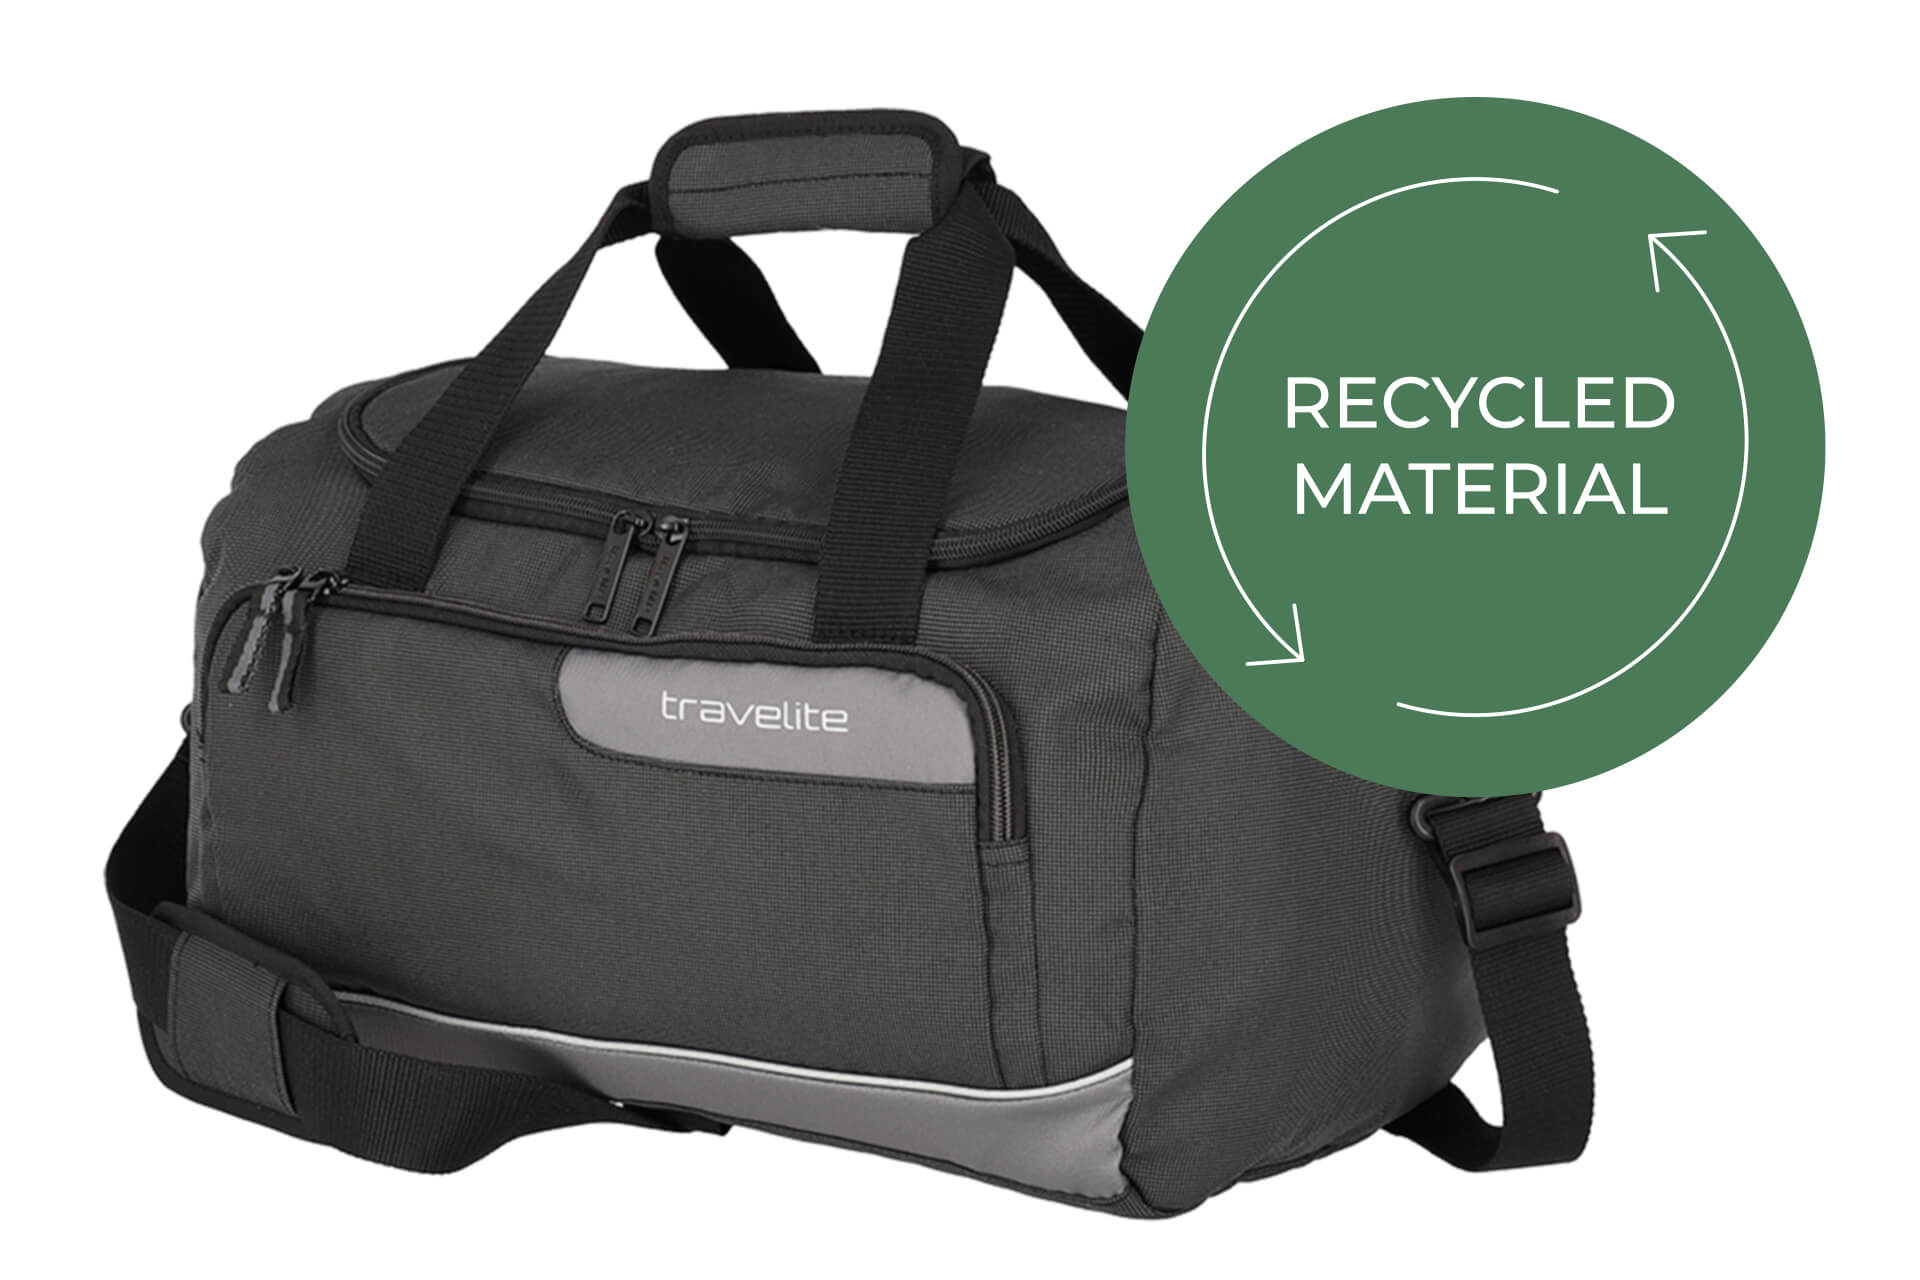 Schiefer Viia Reisetasche von travelite recycled Material